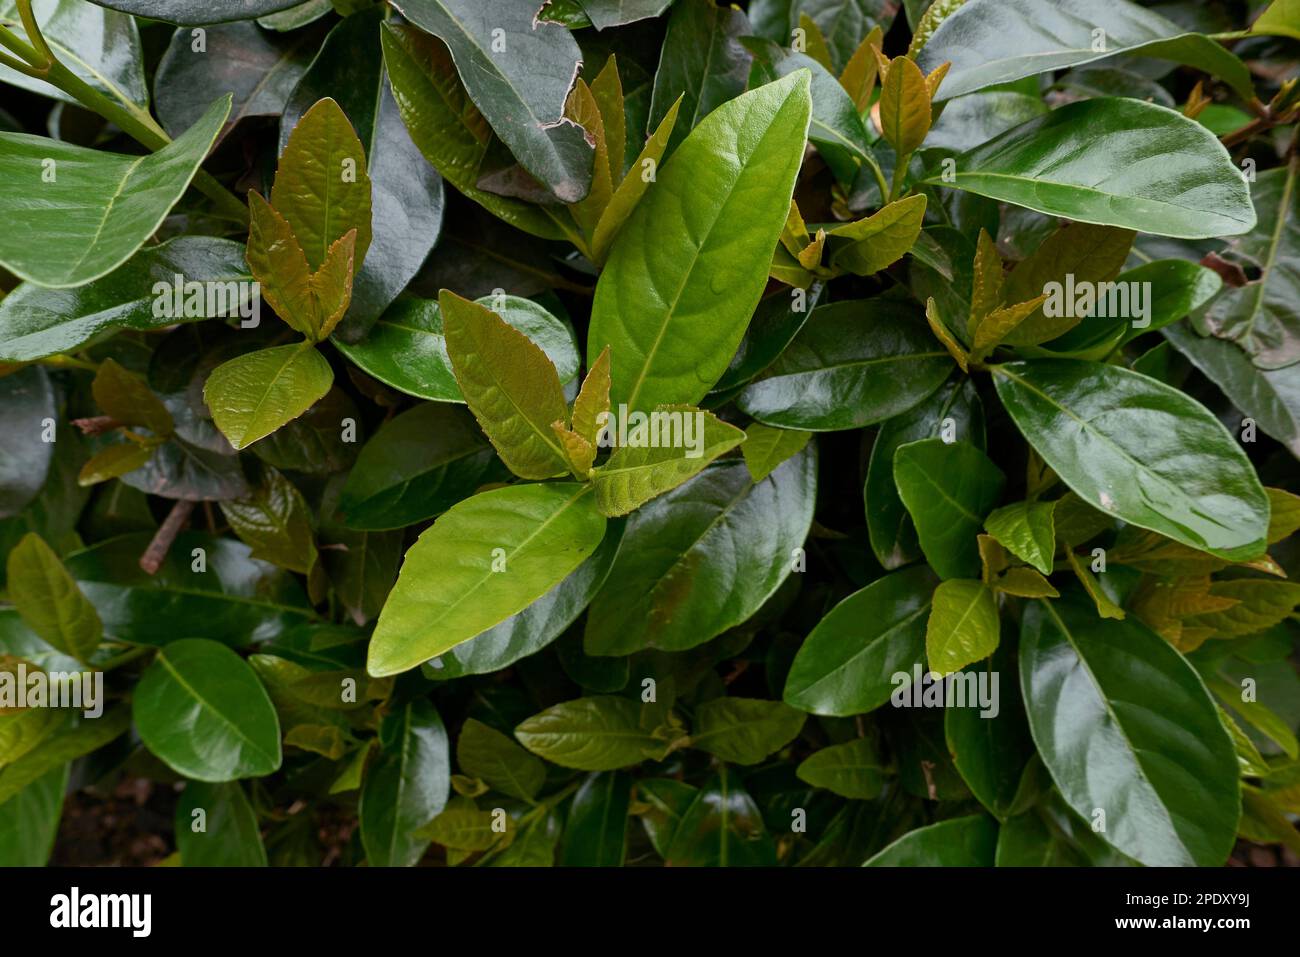 Viburnum odoratissimum lush foliage Stock Photo